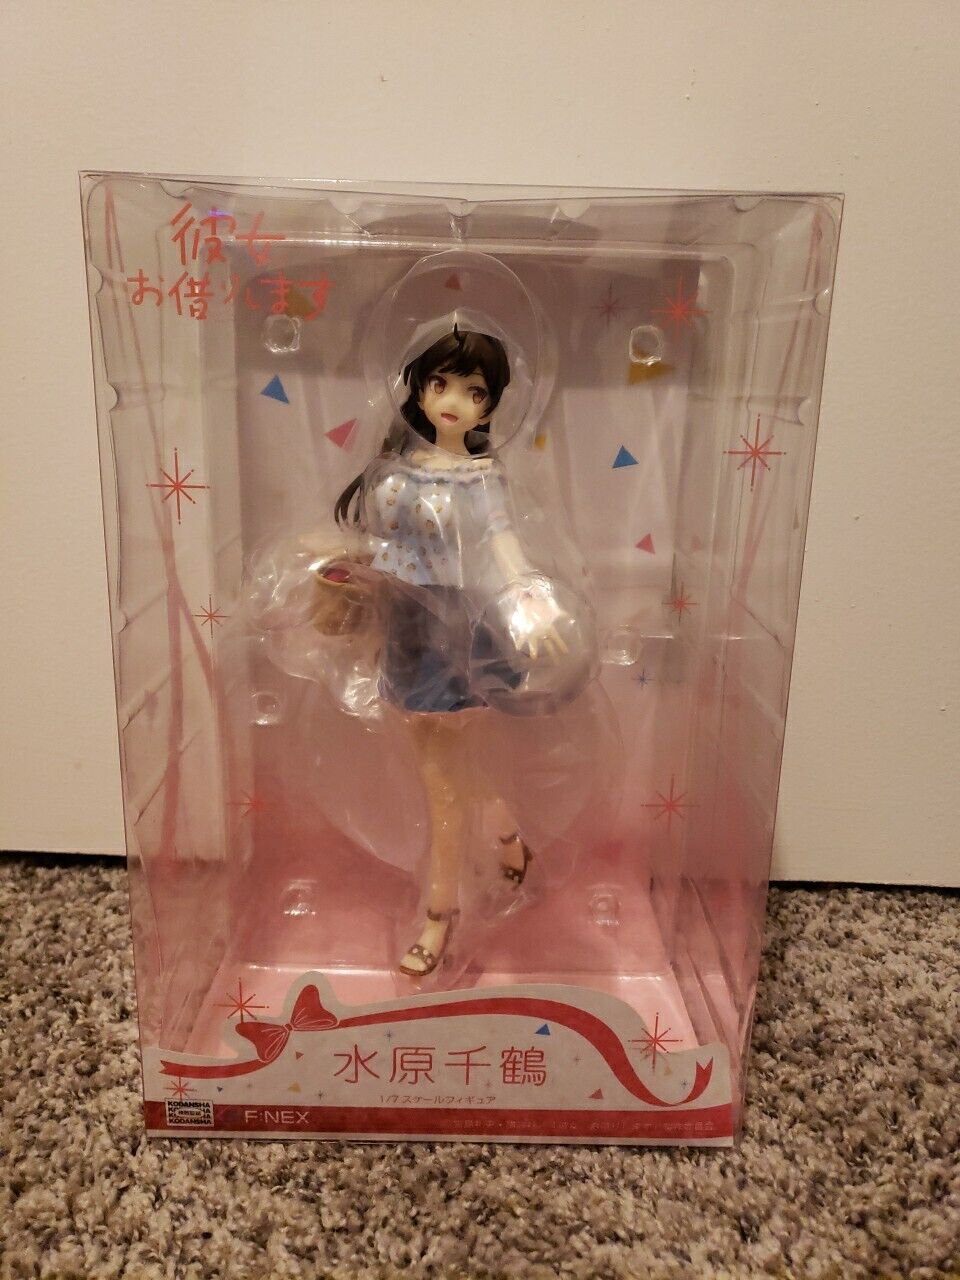 Rent-A-Girlfriend Chizuru Mizuhara 1/7 Scale  Anime Figure